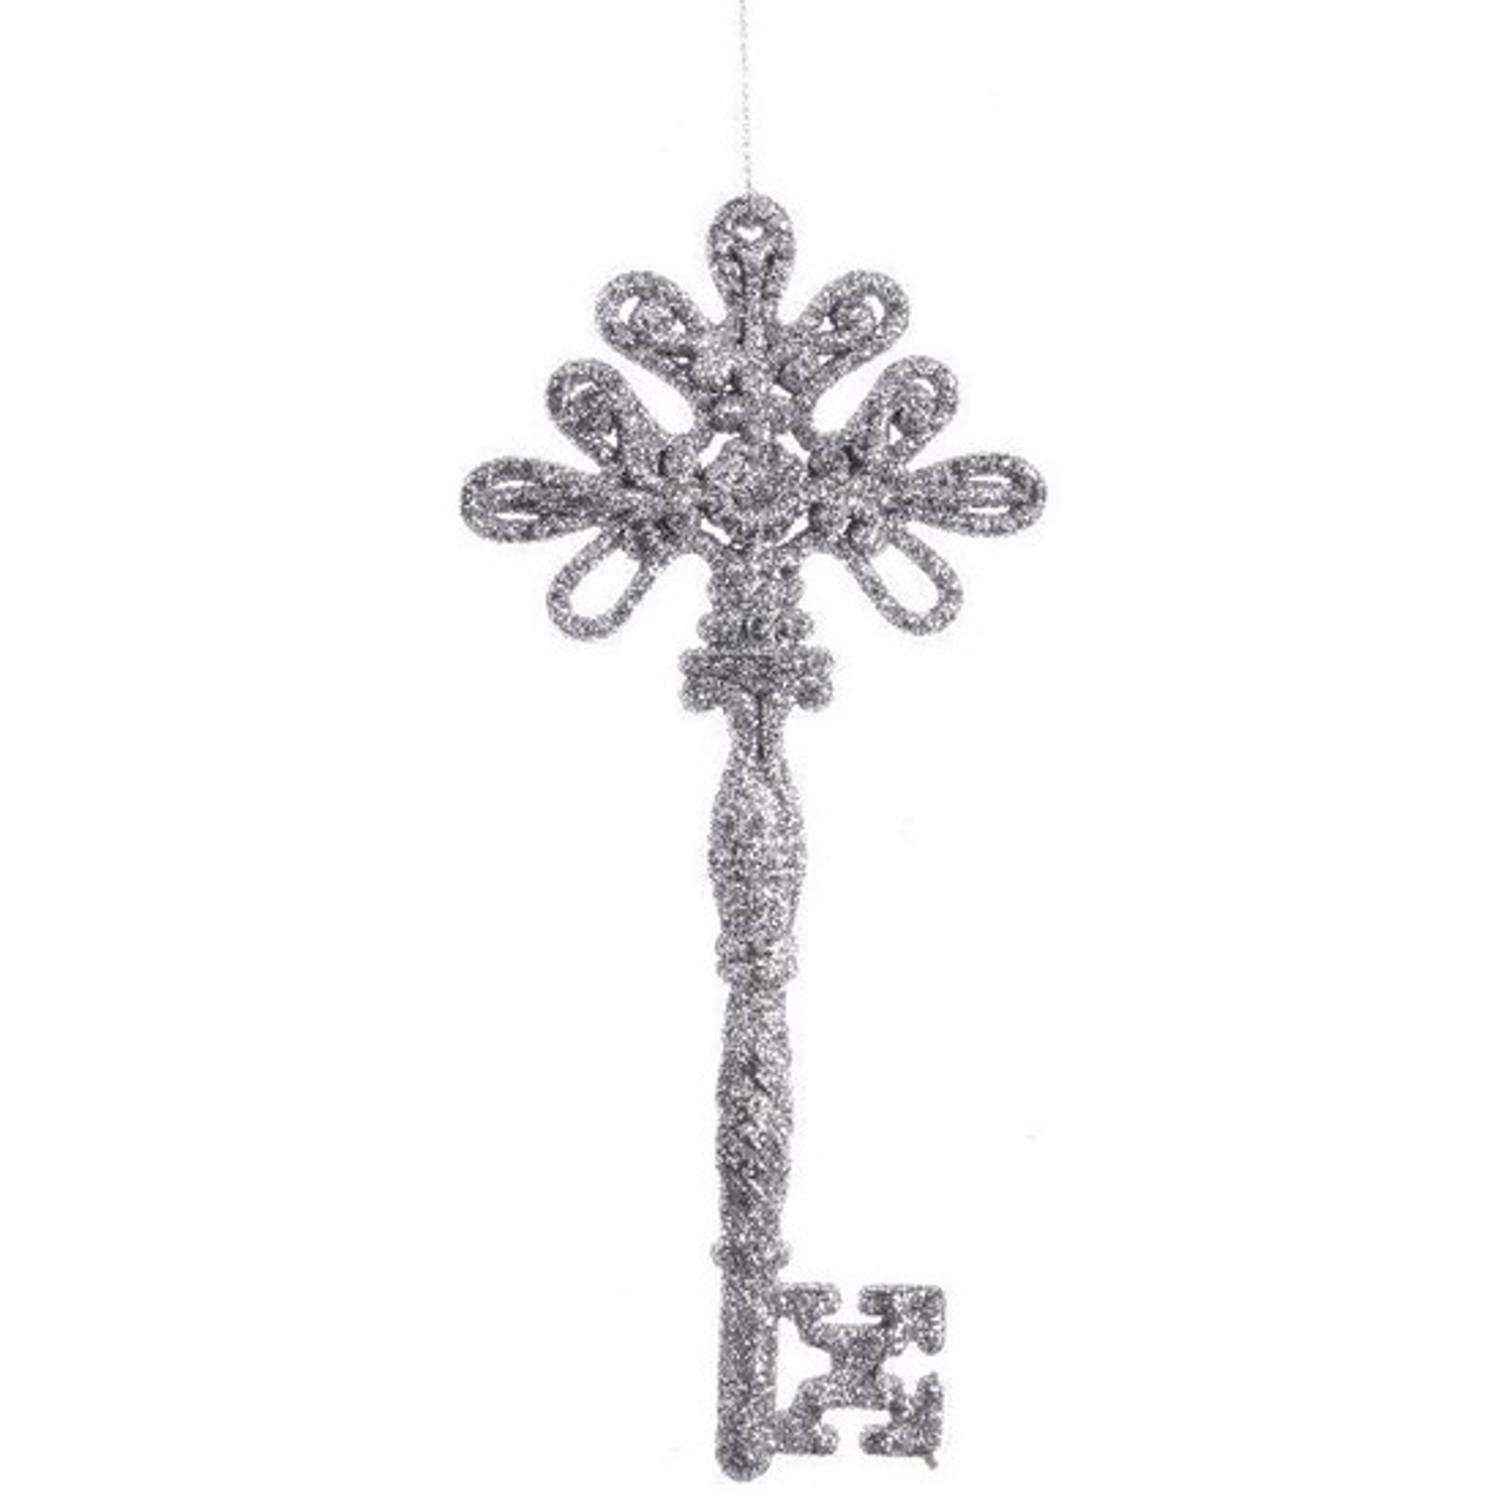 Kerstboom decoratie sleutel zilver 17 cm met glitters